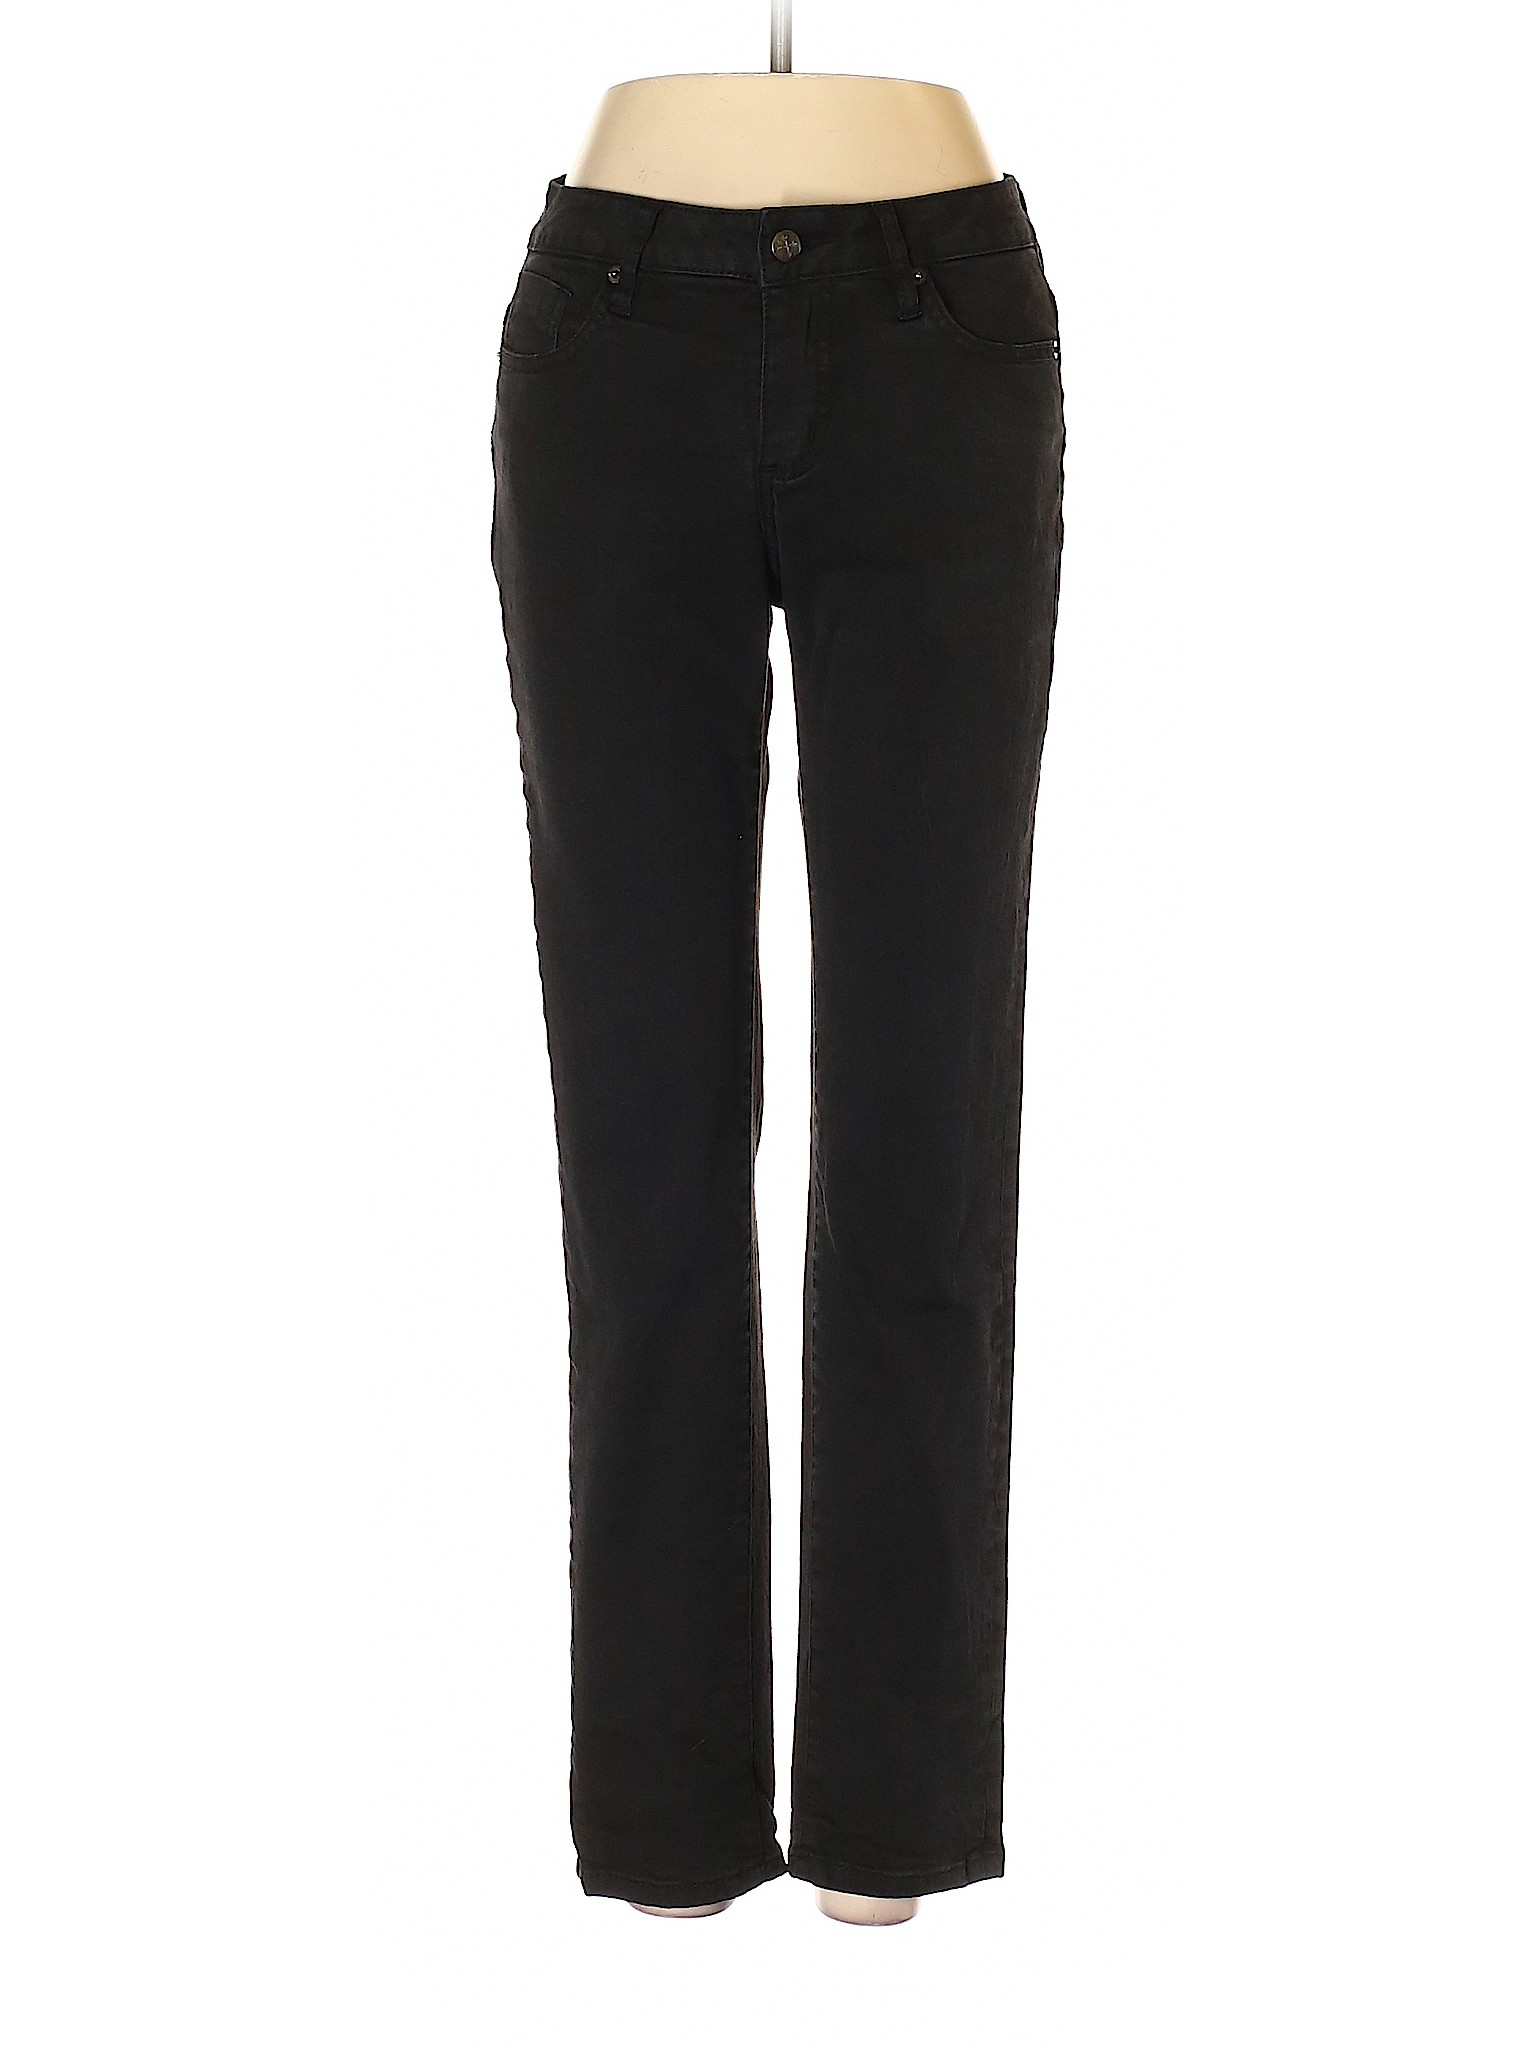 Christopher Blue Solid Black Jeans Size 4 - 92% off | thredUP